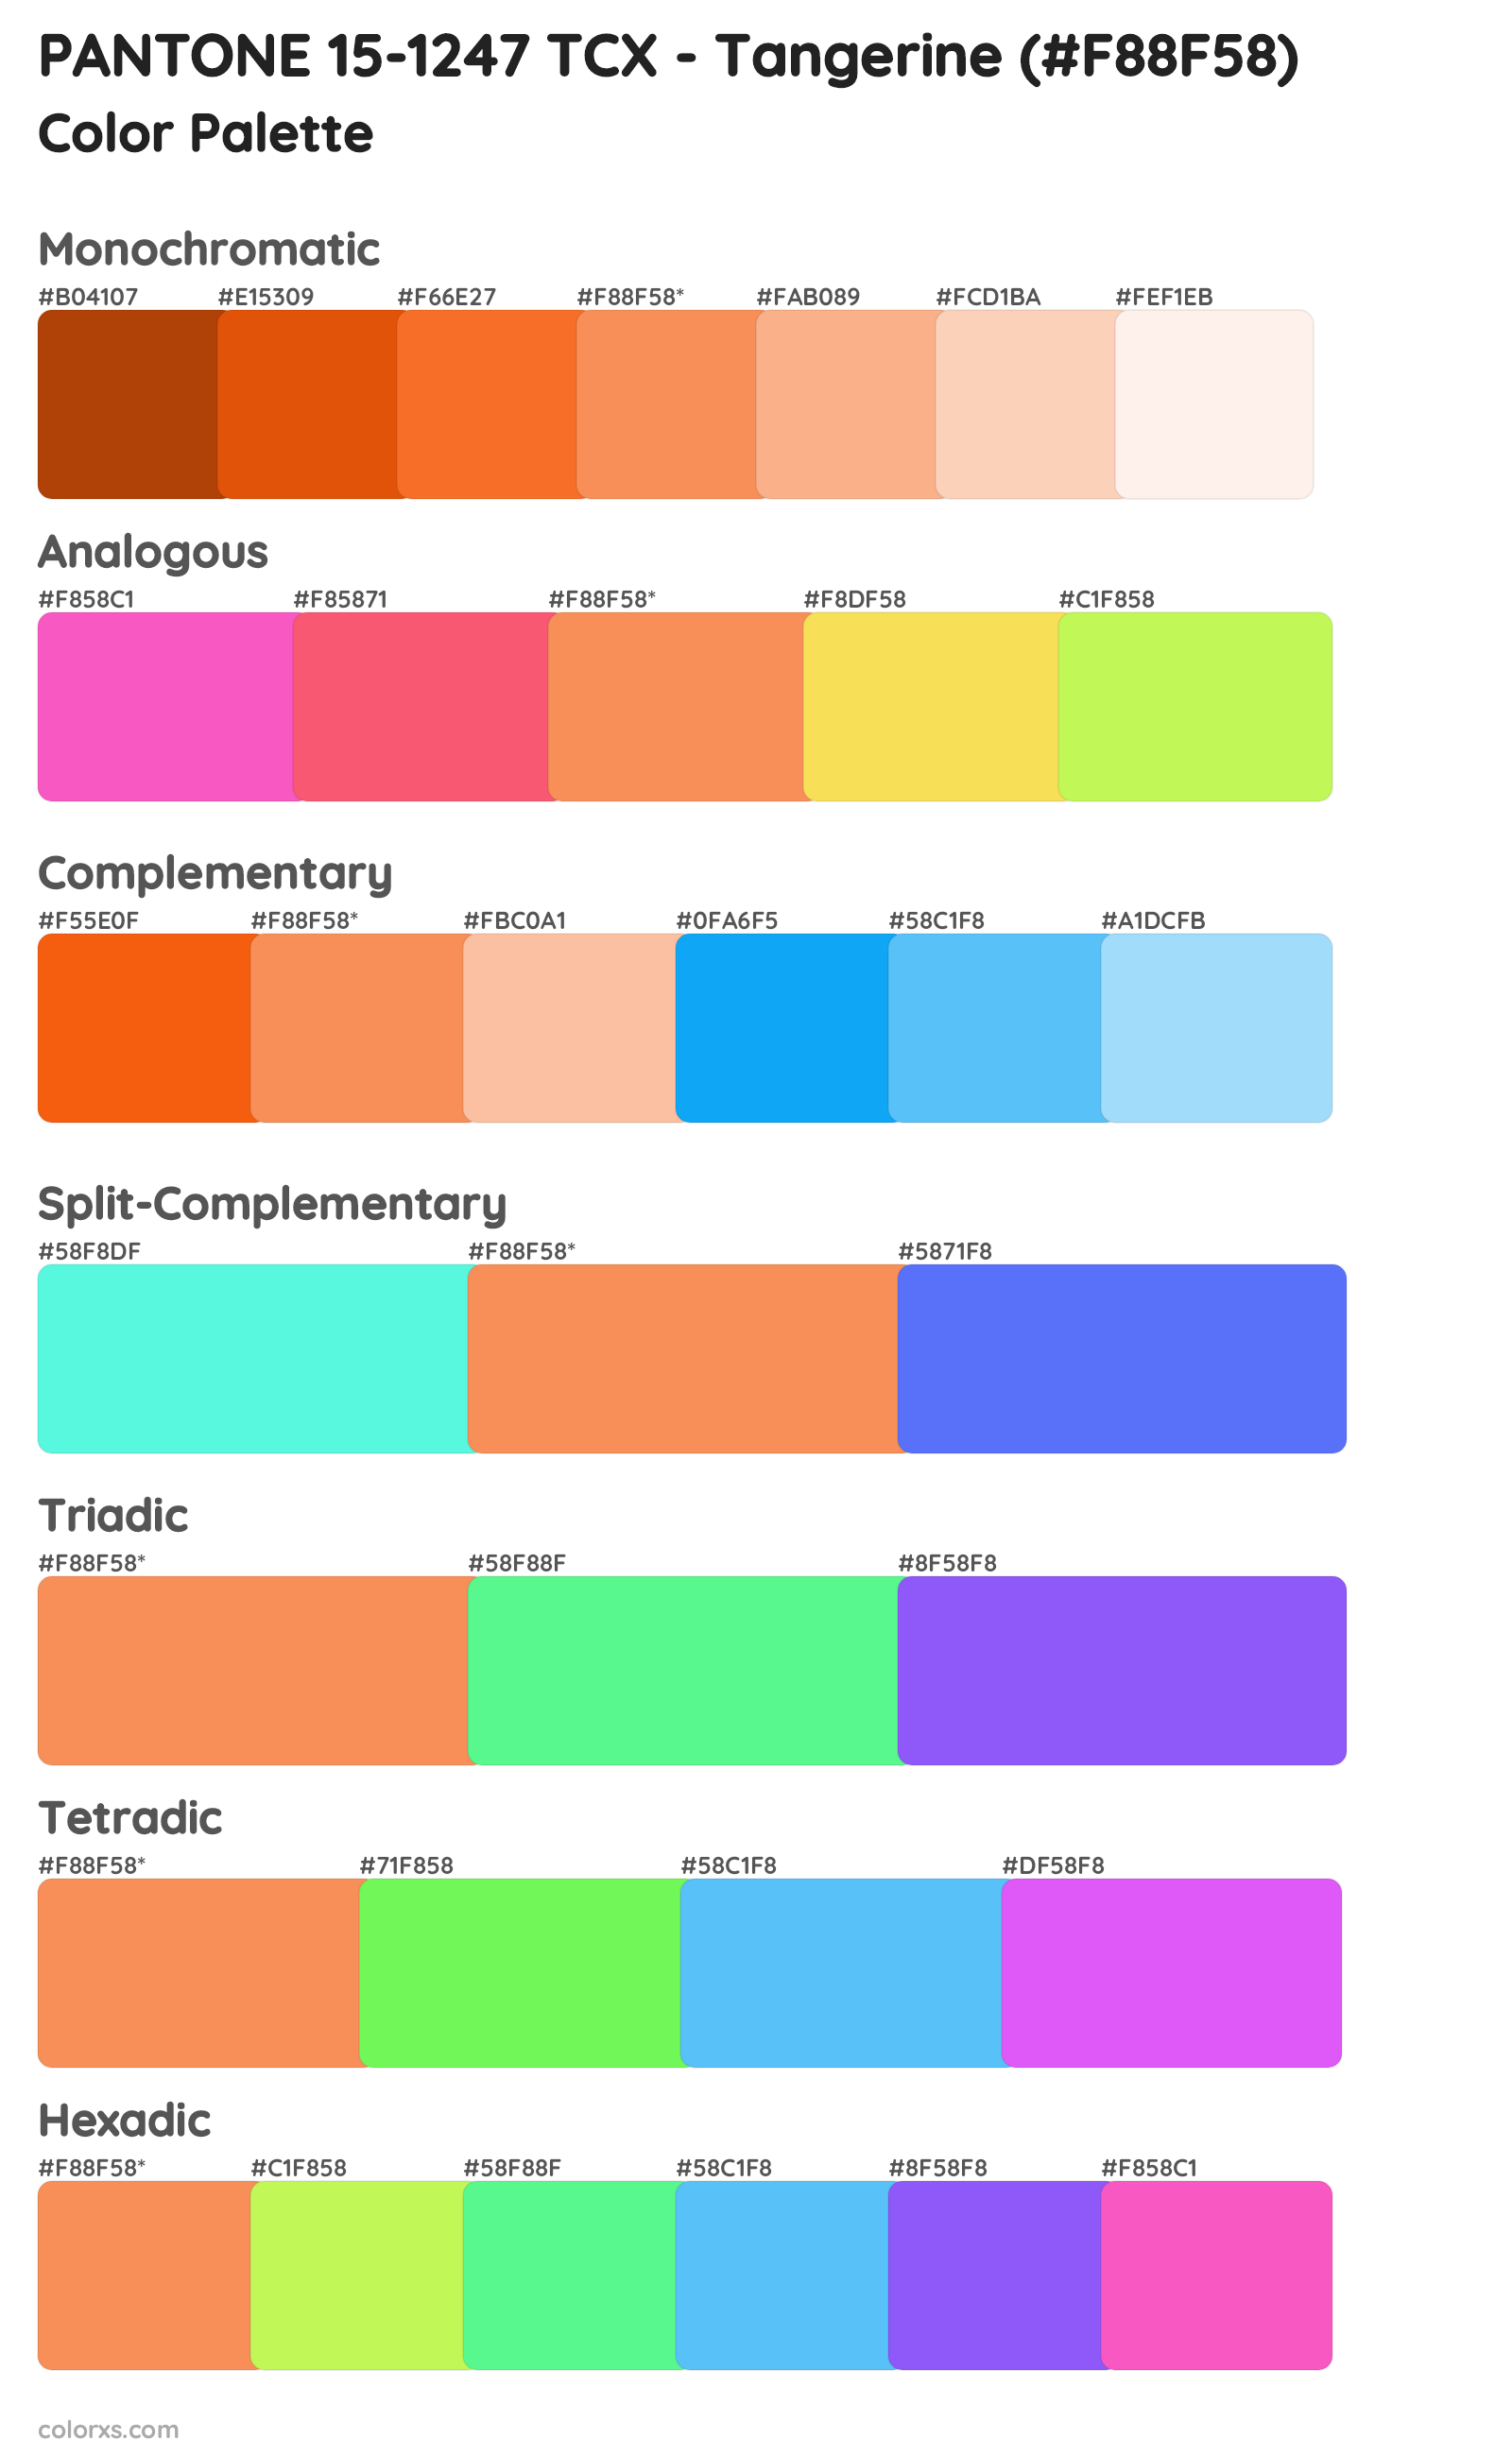 PANTONE 15-1247 TCX - Tangerine Color Scheme Palettes